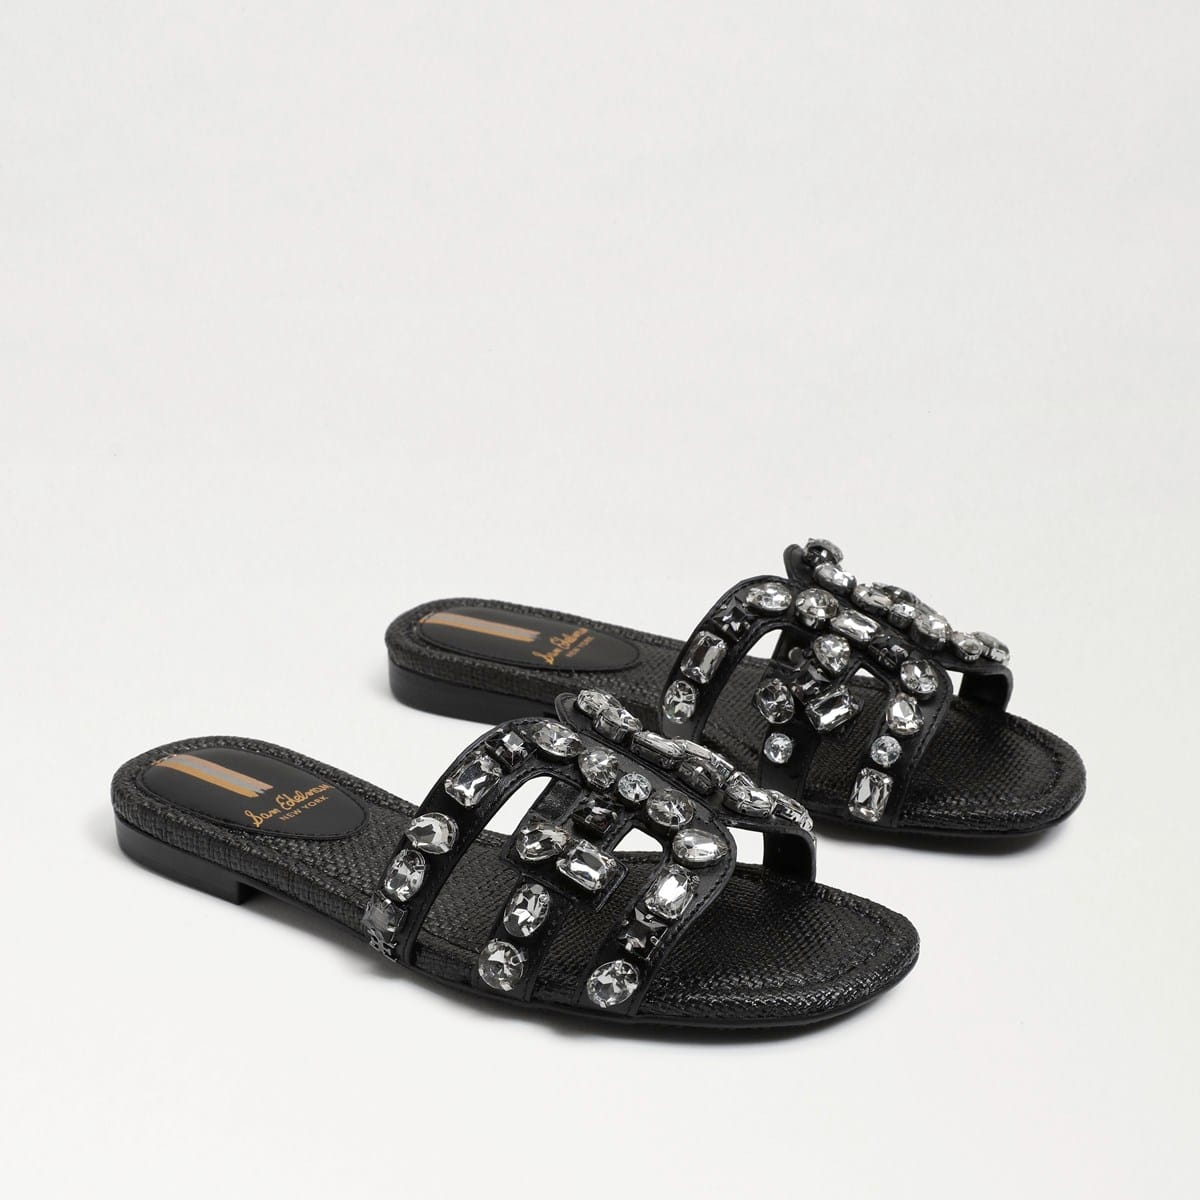 Sam Edelman Bay Embellished Slide Sandal Black Leather 99z0Tsyz